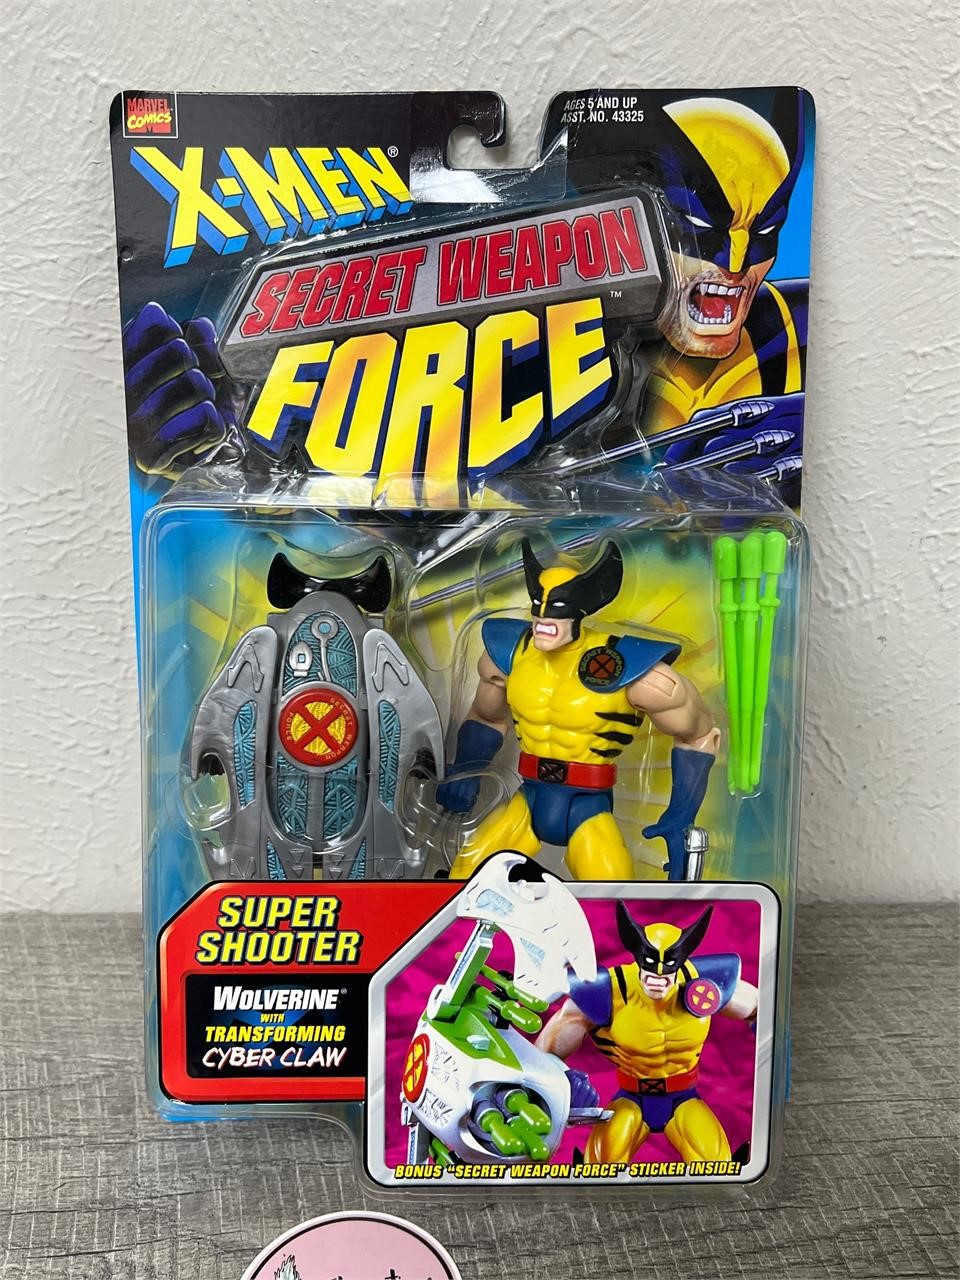 X-men Wolverine Secret Weapon Force action figure